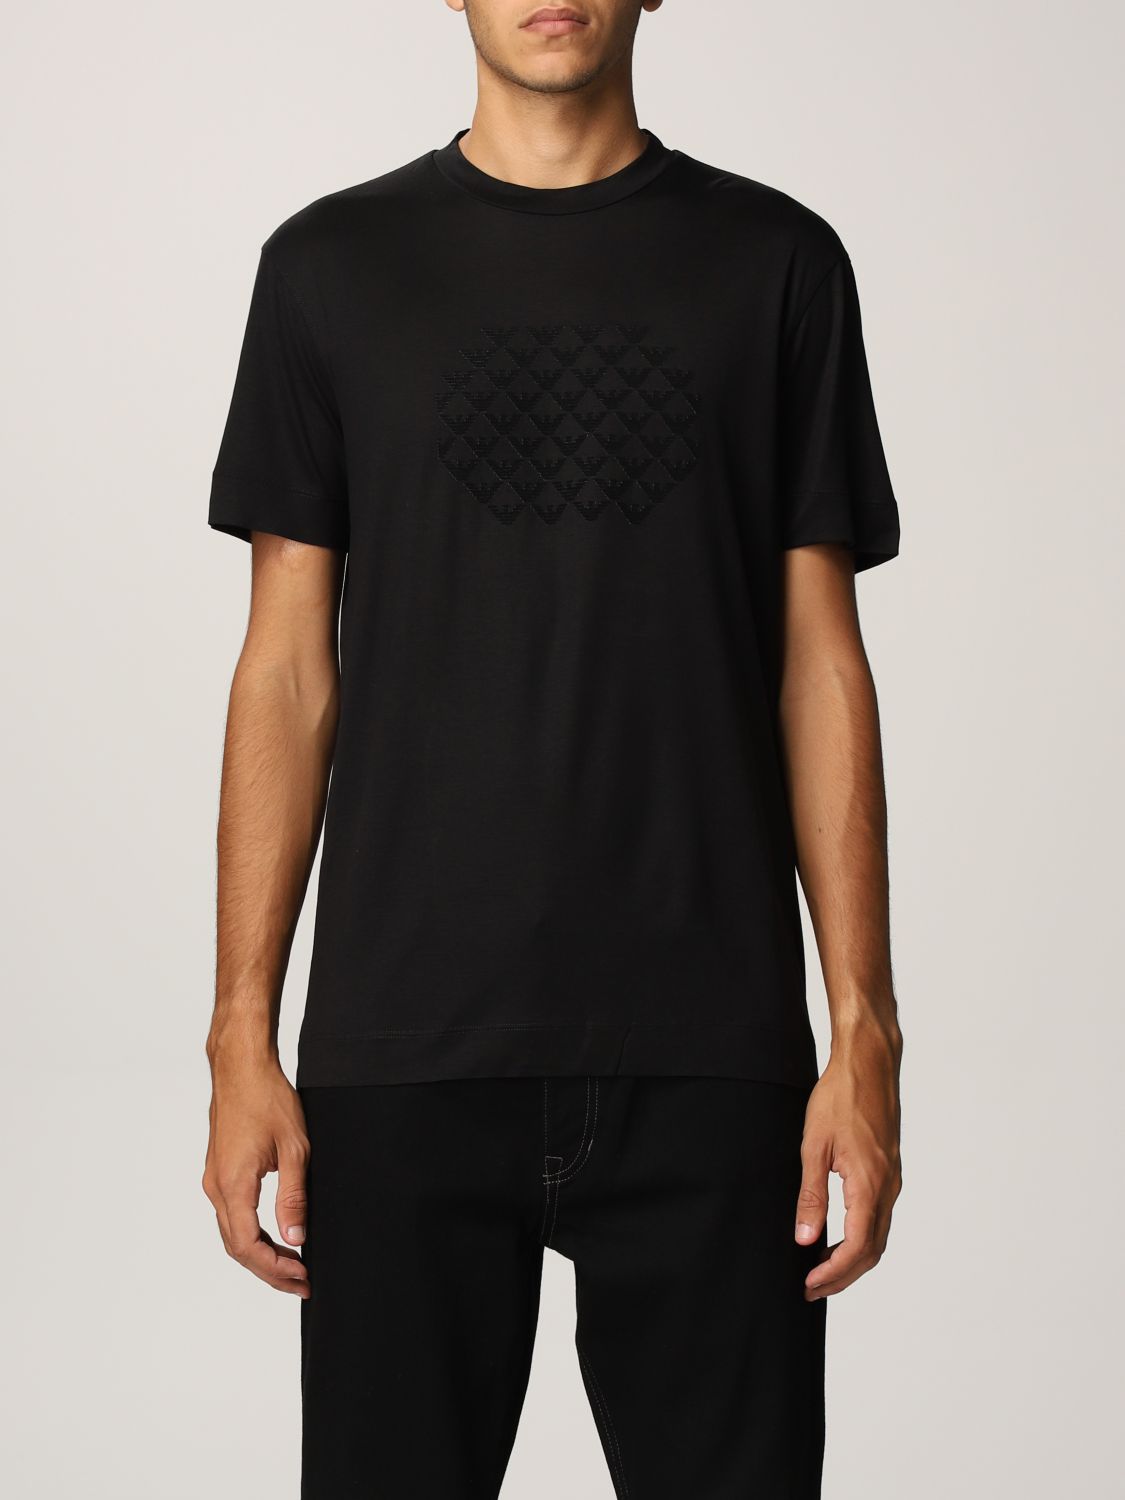 EMPORIO ARMANI: T-shirt in stretch cotton blend - Black | Emporio ...